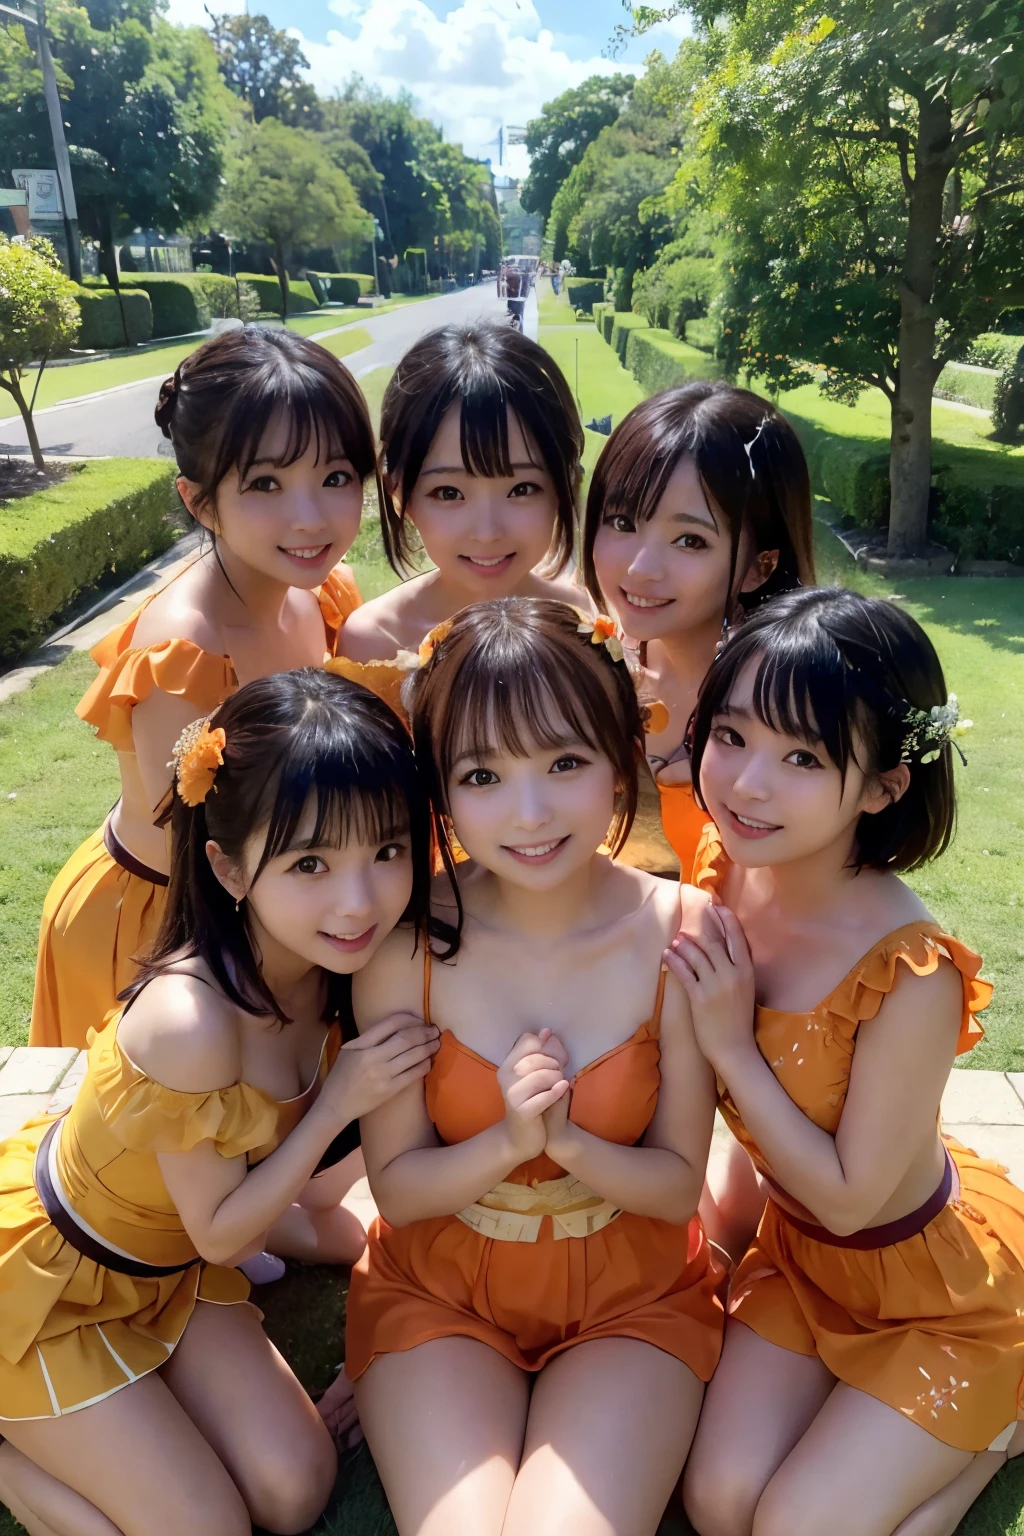 ((melhor qualidade, Obra de arte)), cinco amigos ao longo da vida,ídolo japonês,costume,((suco de laranja)), abraçando calorosamente, sorrindo de orelha a orelha, cercado por vegetação exuberante e um céu azul nítido, aproveitando o sol de um dia perfeito.